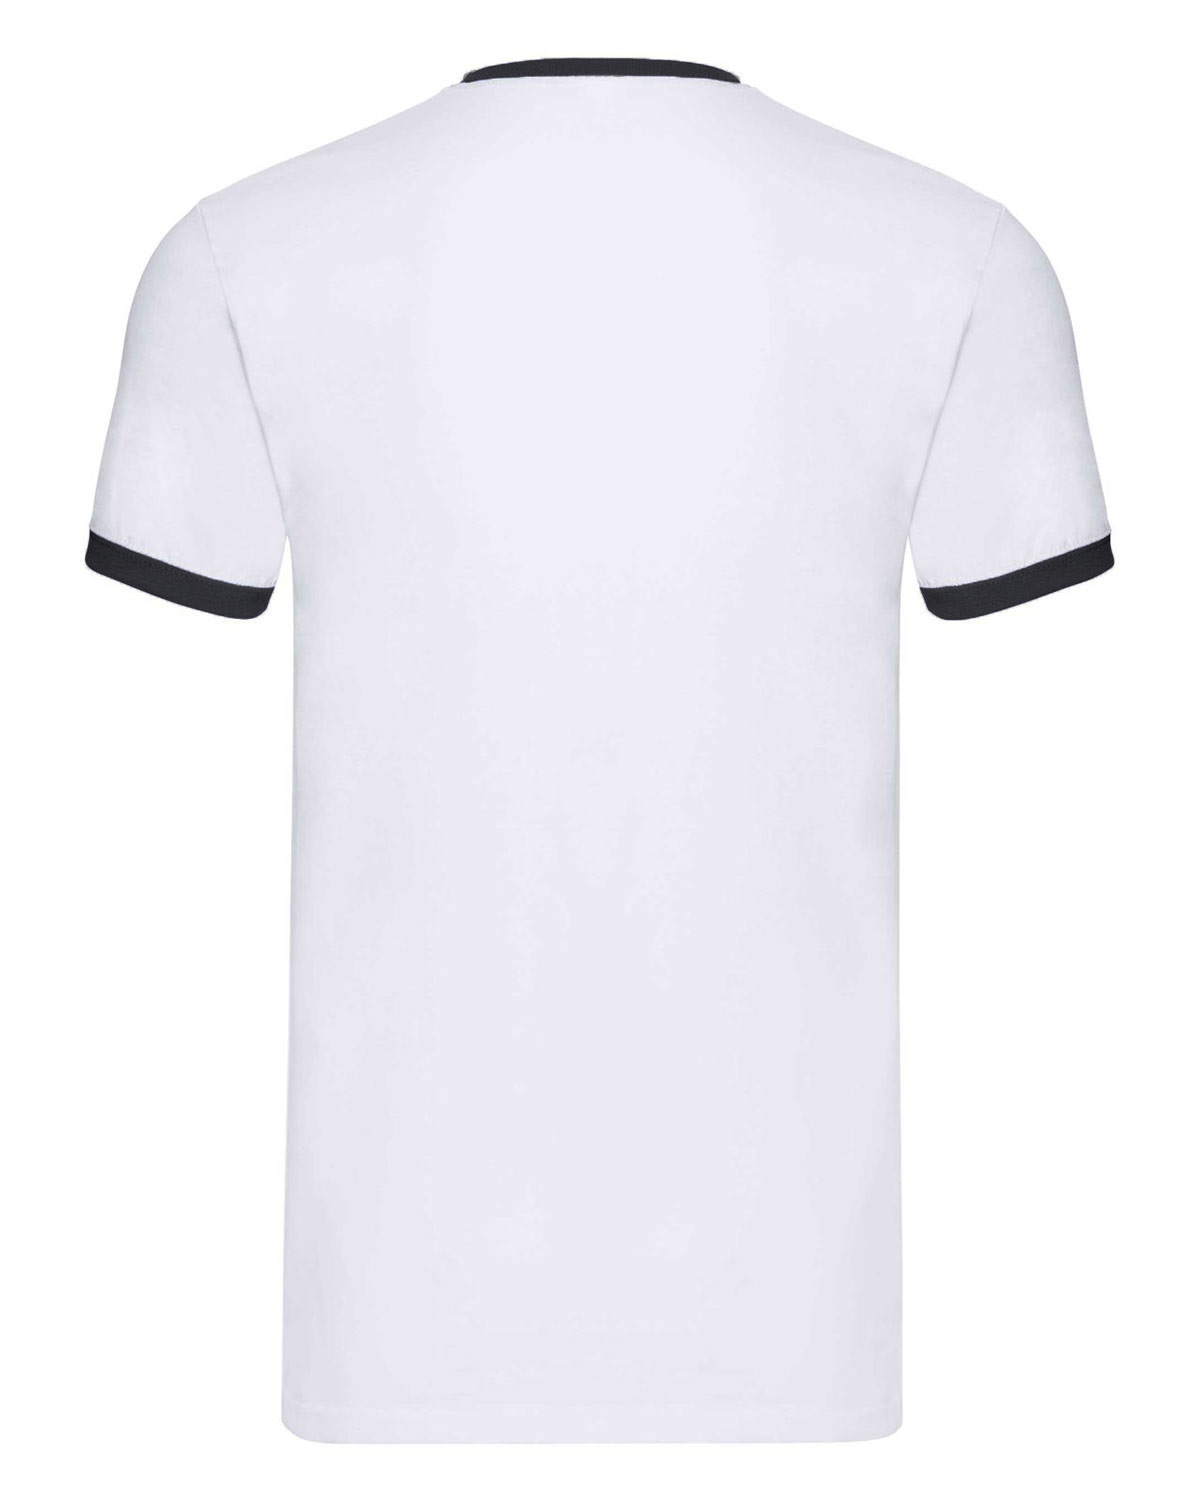 Ringer T-Shirt White/Black XXL